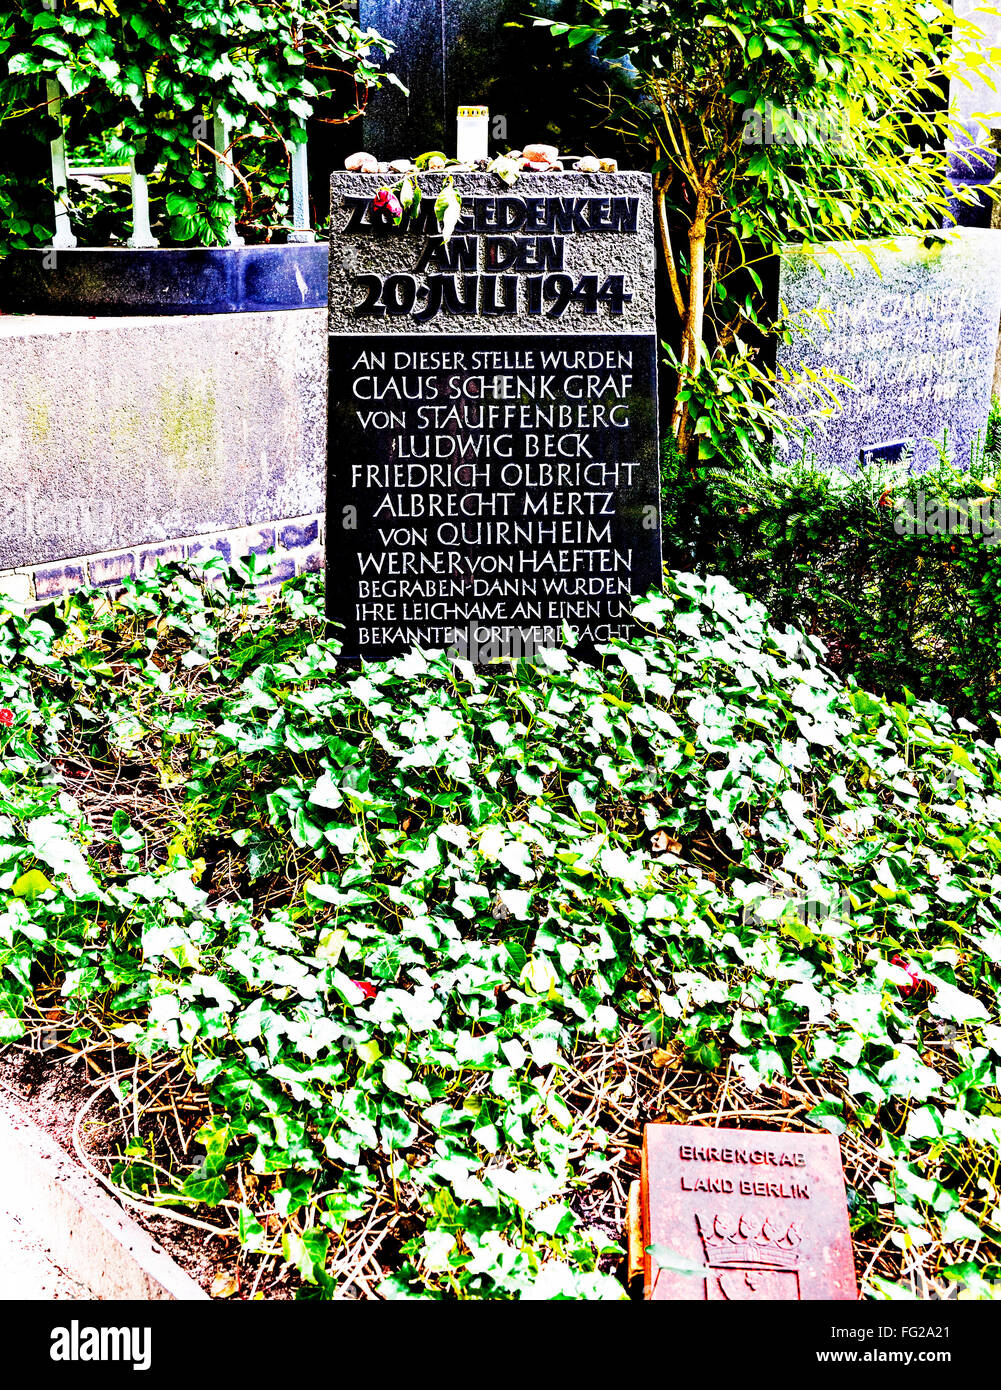 Memorial site for the resistance fighter of the 20. July 1944 - von Stauffenberg, Beck, Haeften, von Quirnheim - Widerstandskmpfer 20. Juli Stock Photo